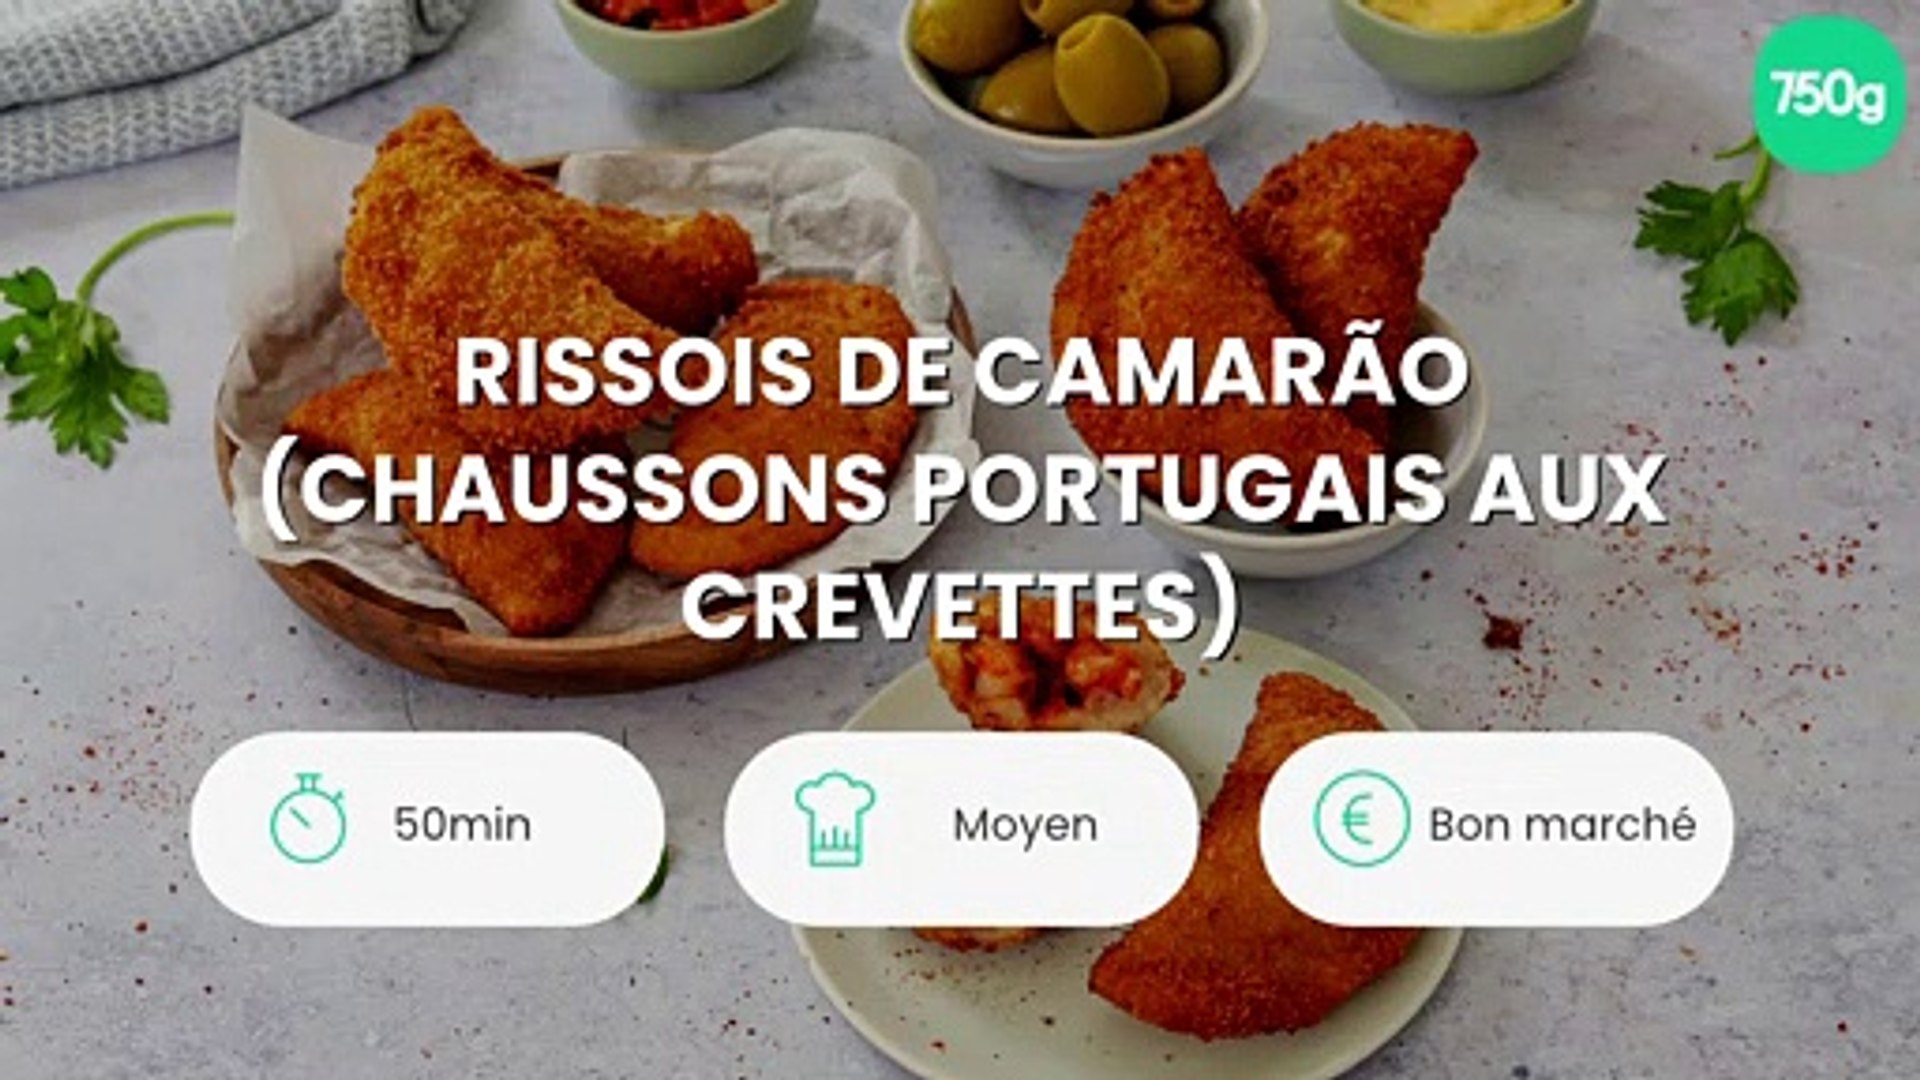 Rissois de camarão (chaussons portugais aux crevettes) - Vidéo Dailymotion